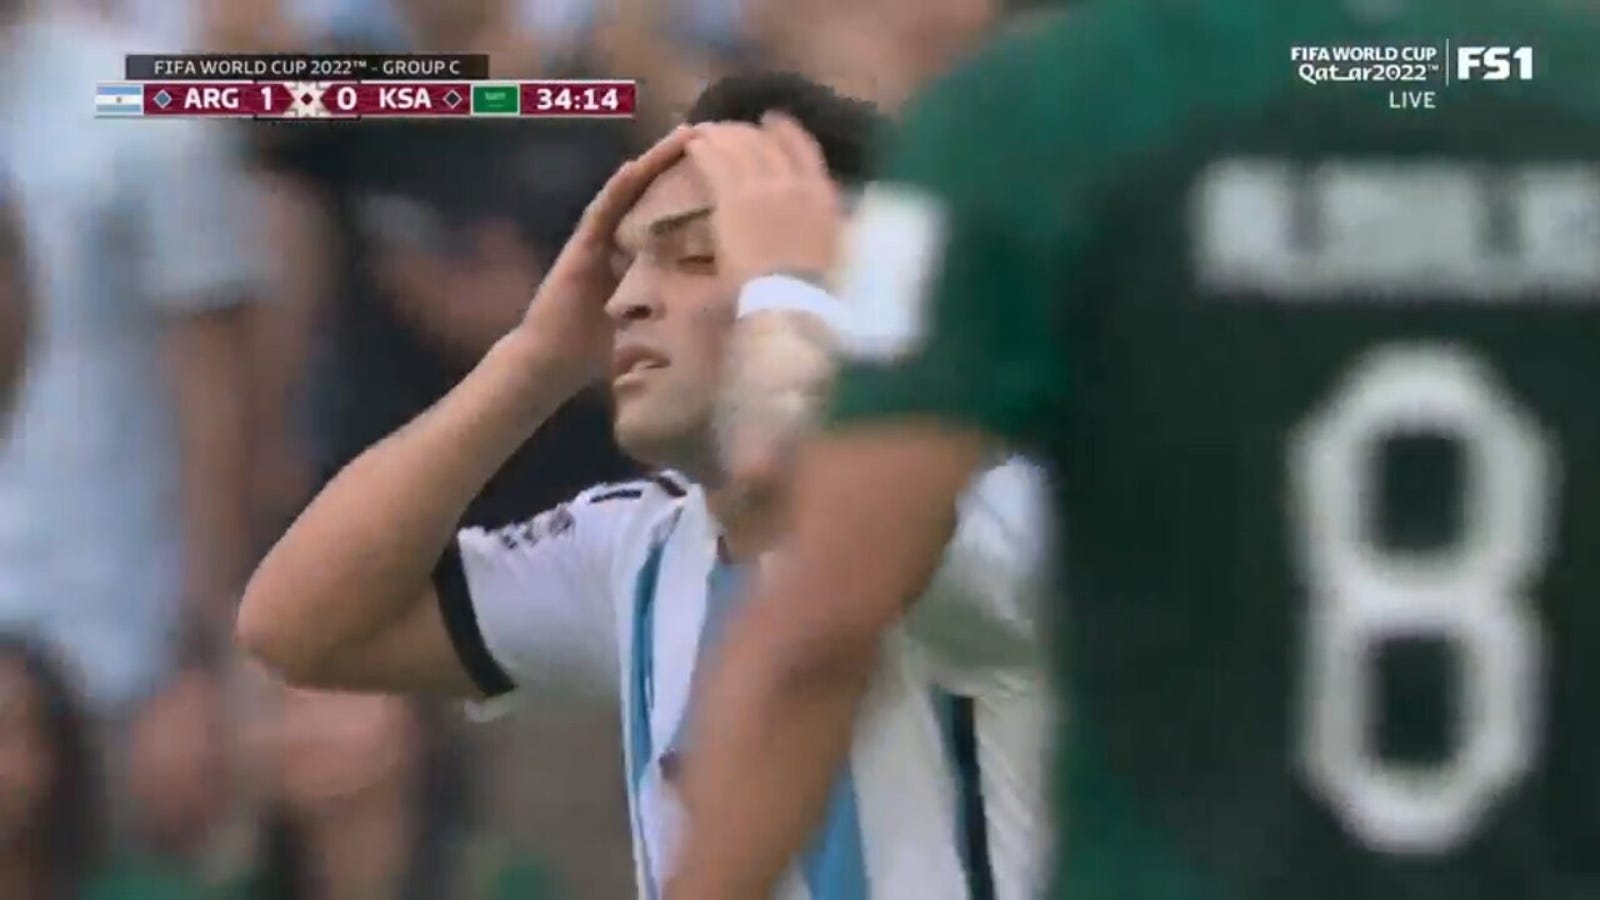 L'Argentine a marqué sept fois hors-jeu total en première mi-temps contre l'Arabie saoudite